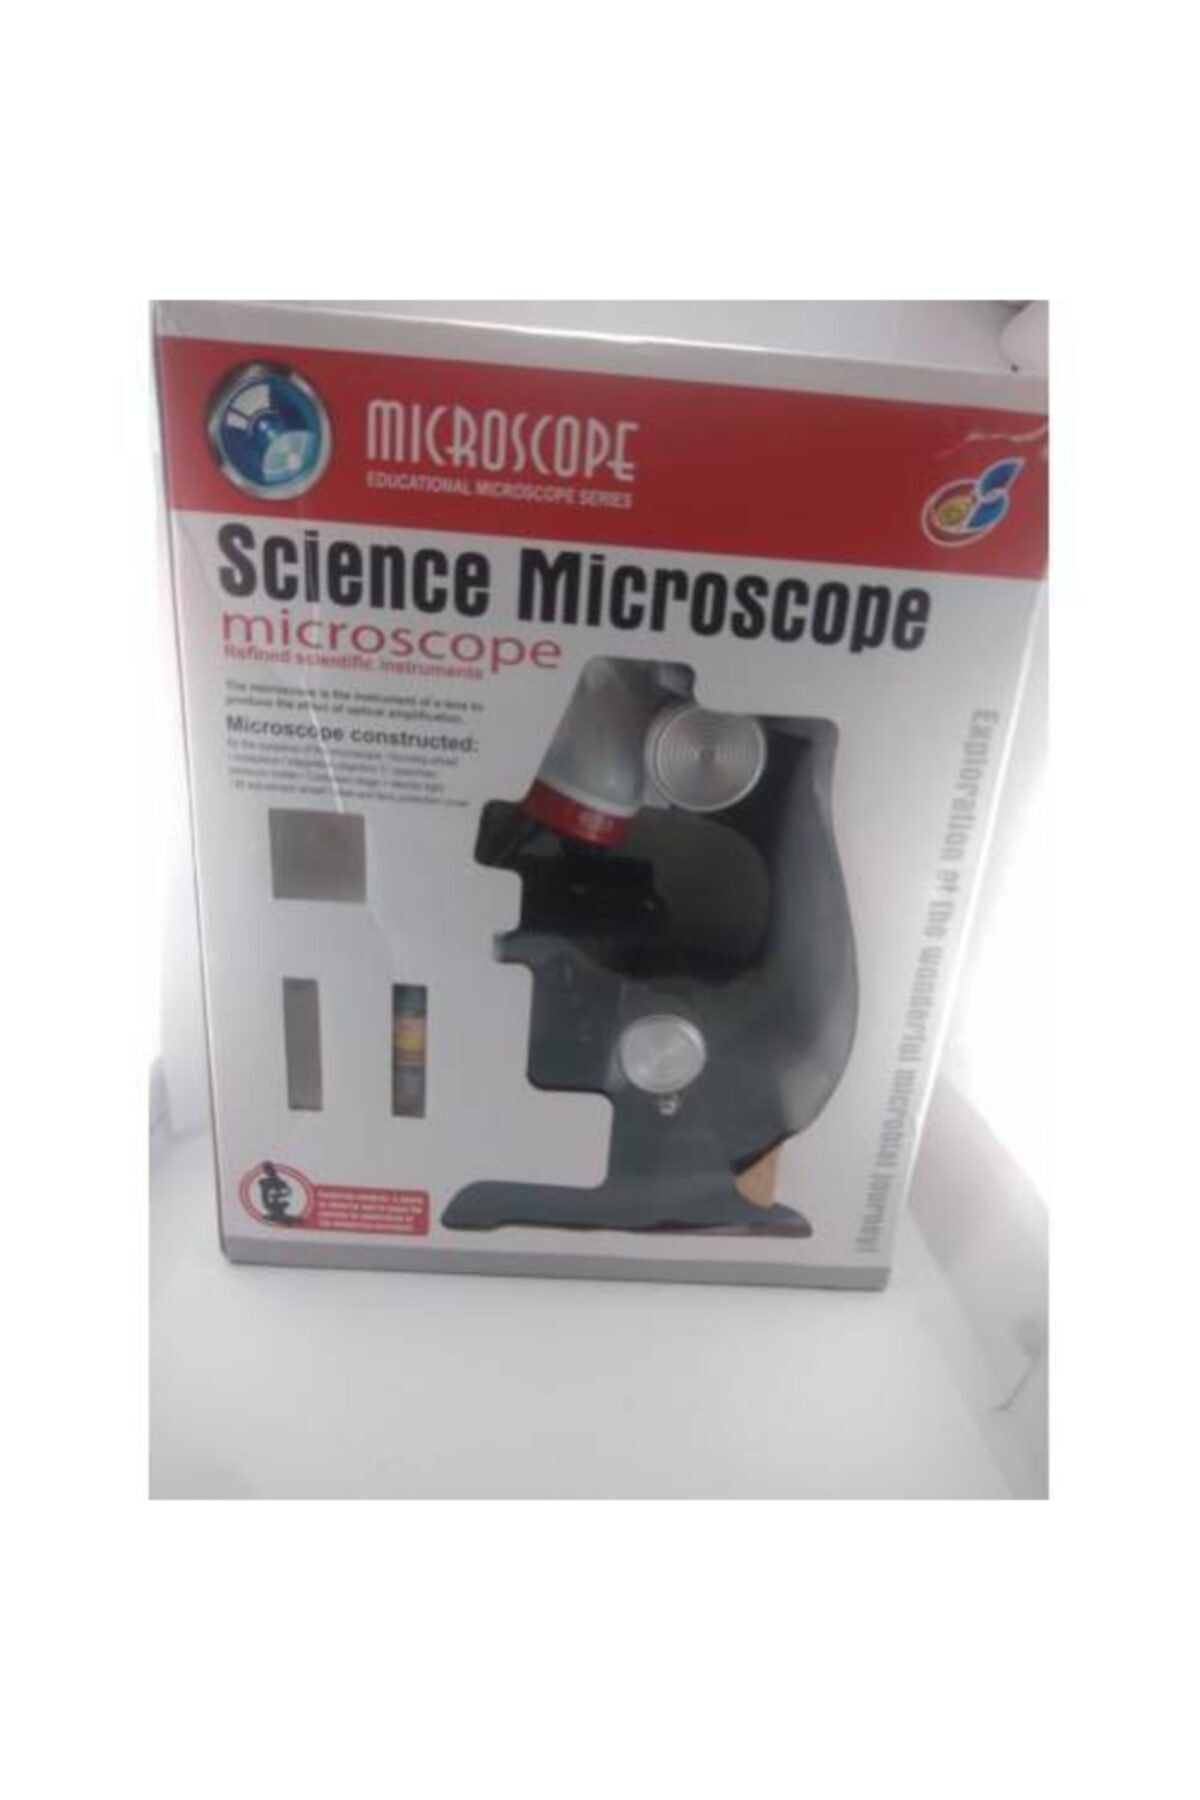 Sci Mx Science Kits For Kids Microscope